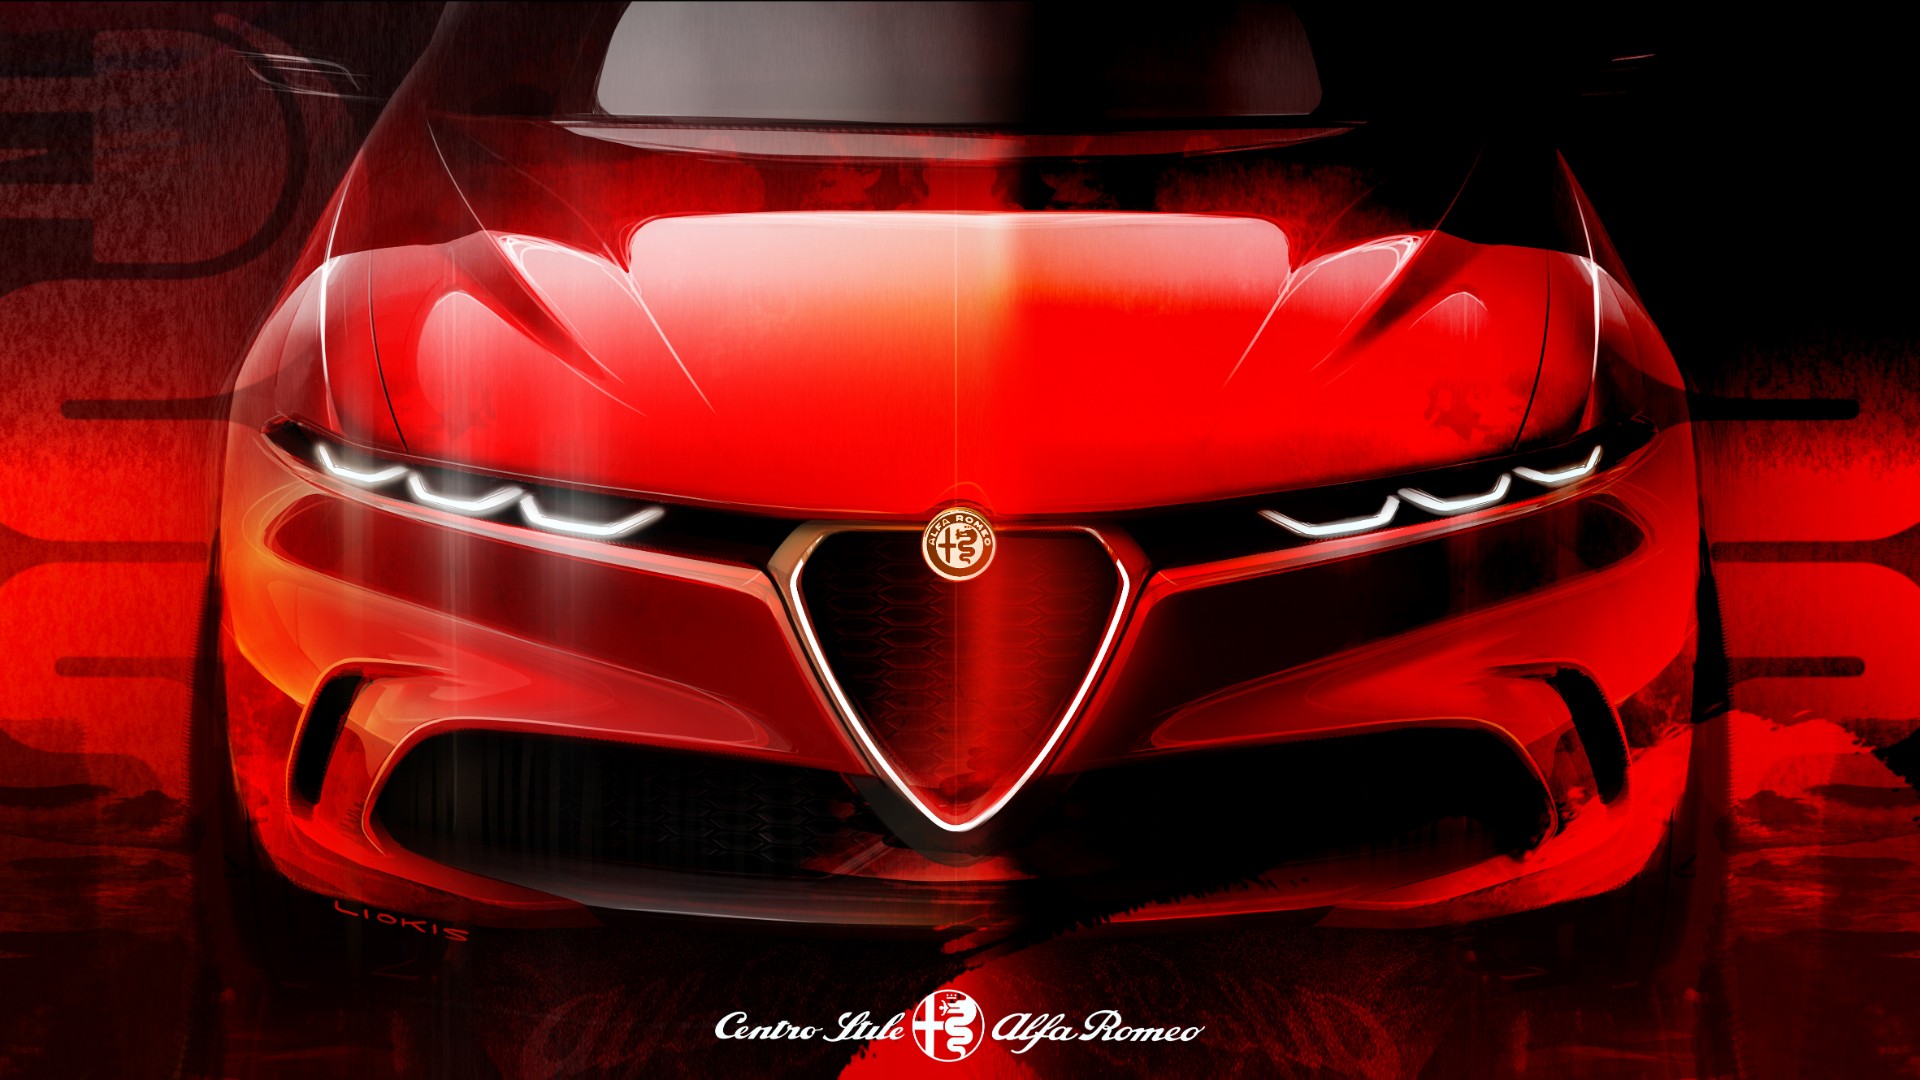 Αγοράστε σχέδια των Alfa Romeo, FIAT και Lancia για καλό σκοπό [pics]